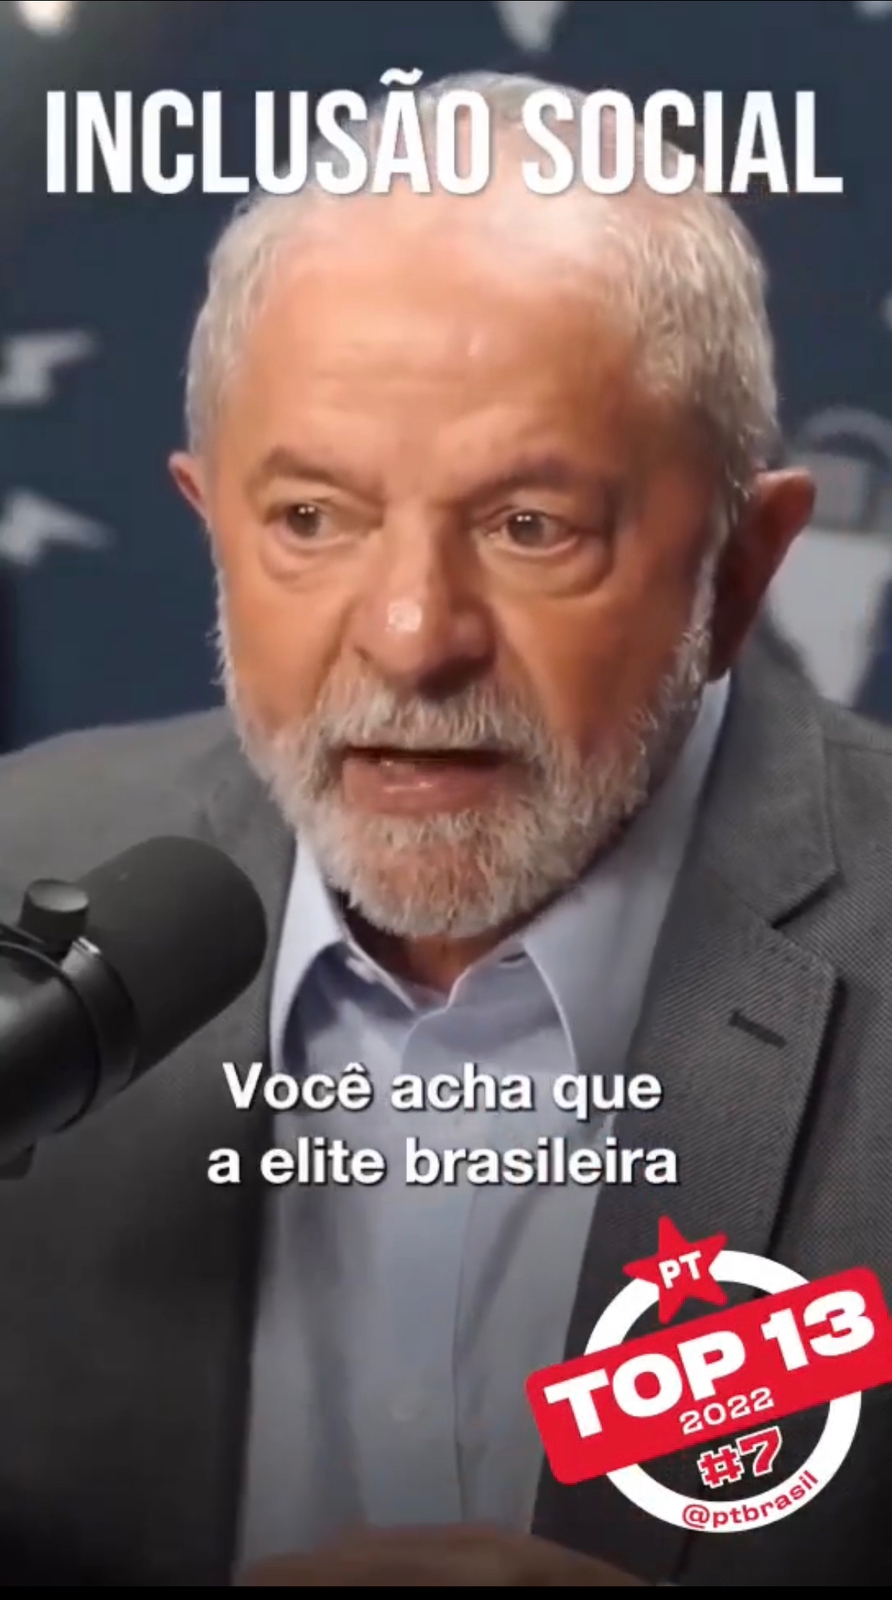 Análise De Lula Sobre Inclusão Social